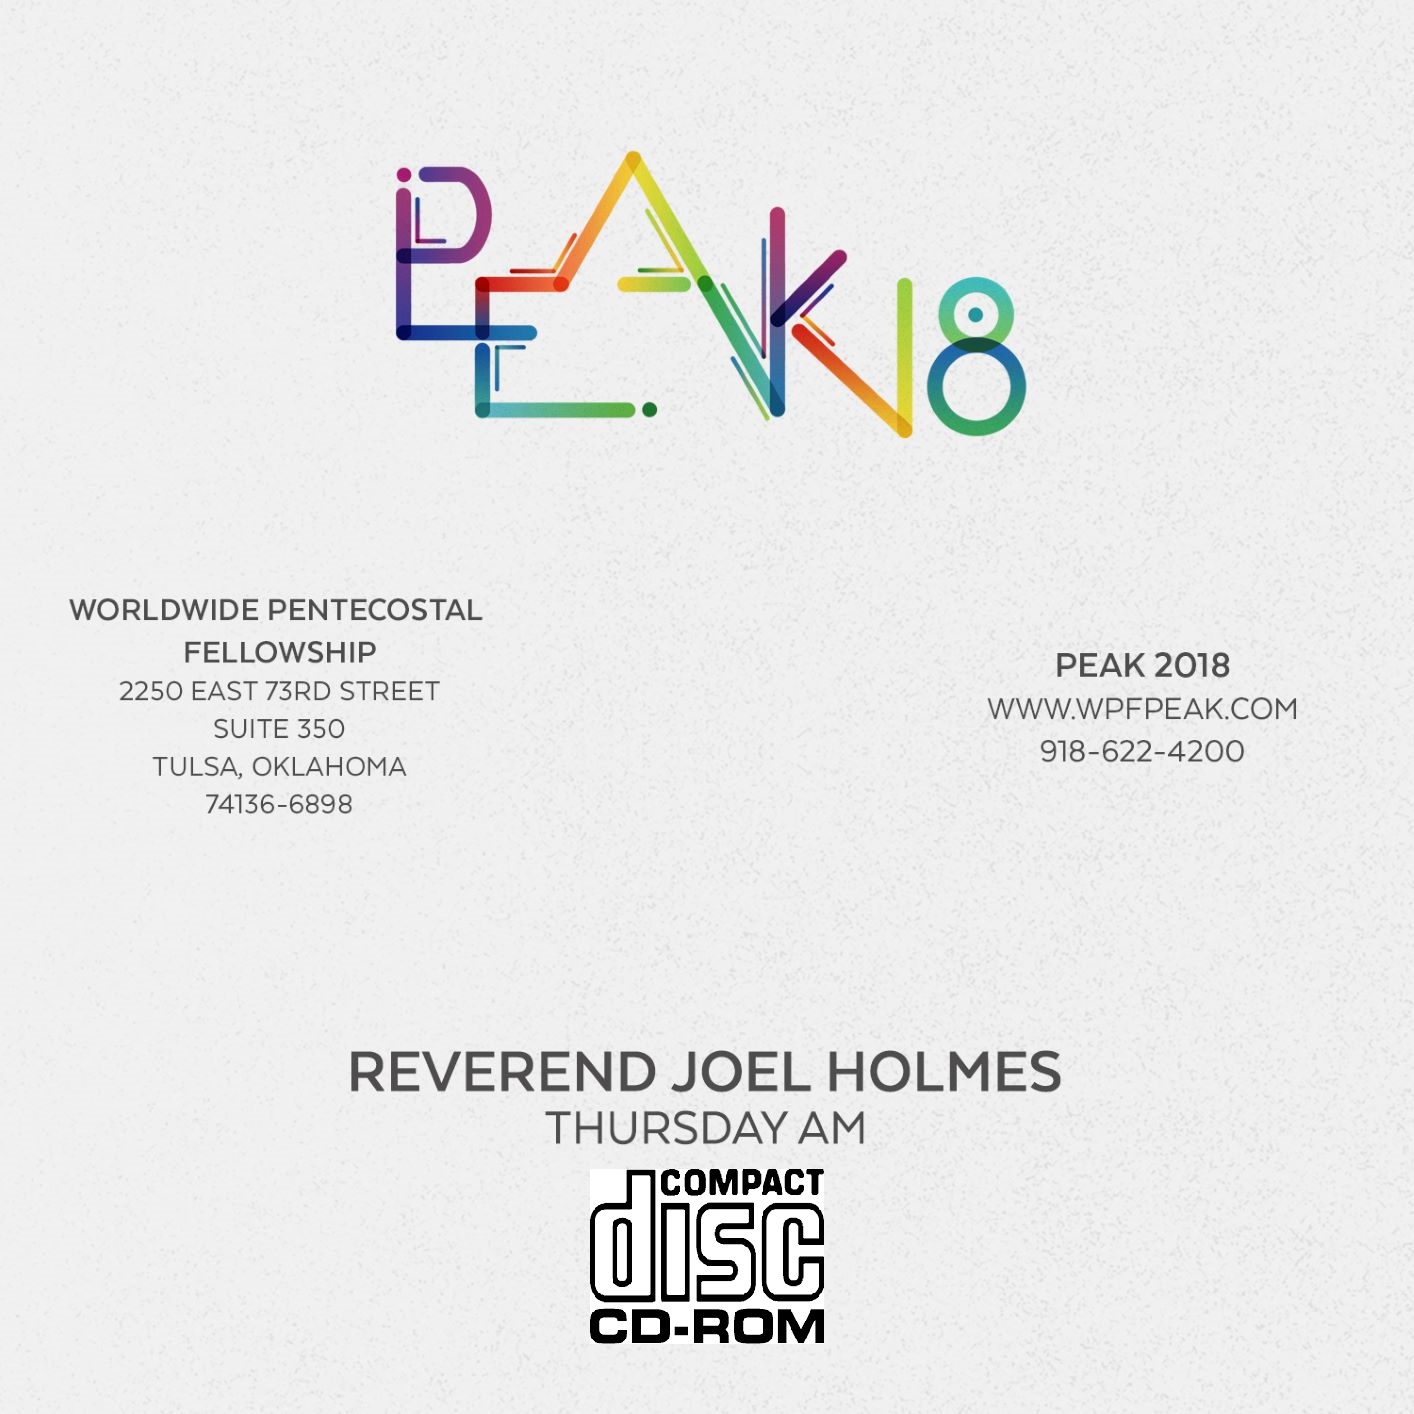 2018 PEAK Rev. Joel Holmes (CD)